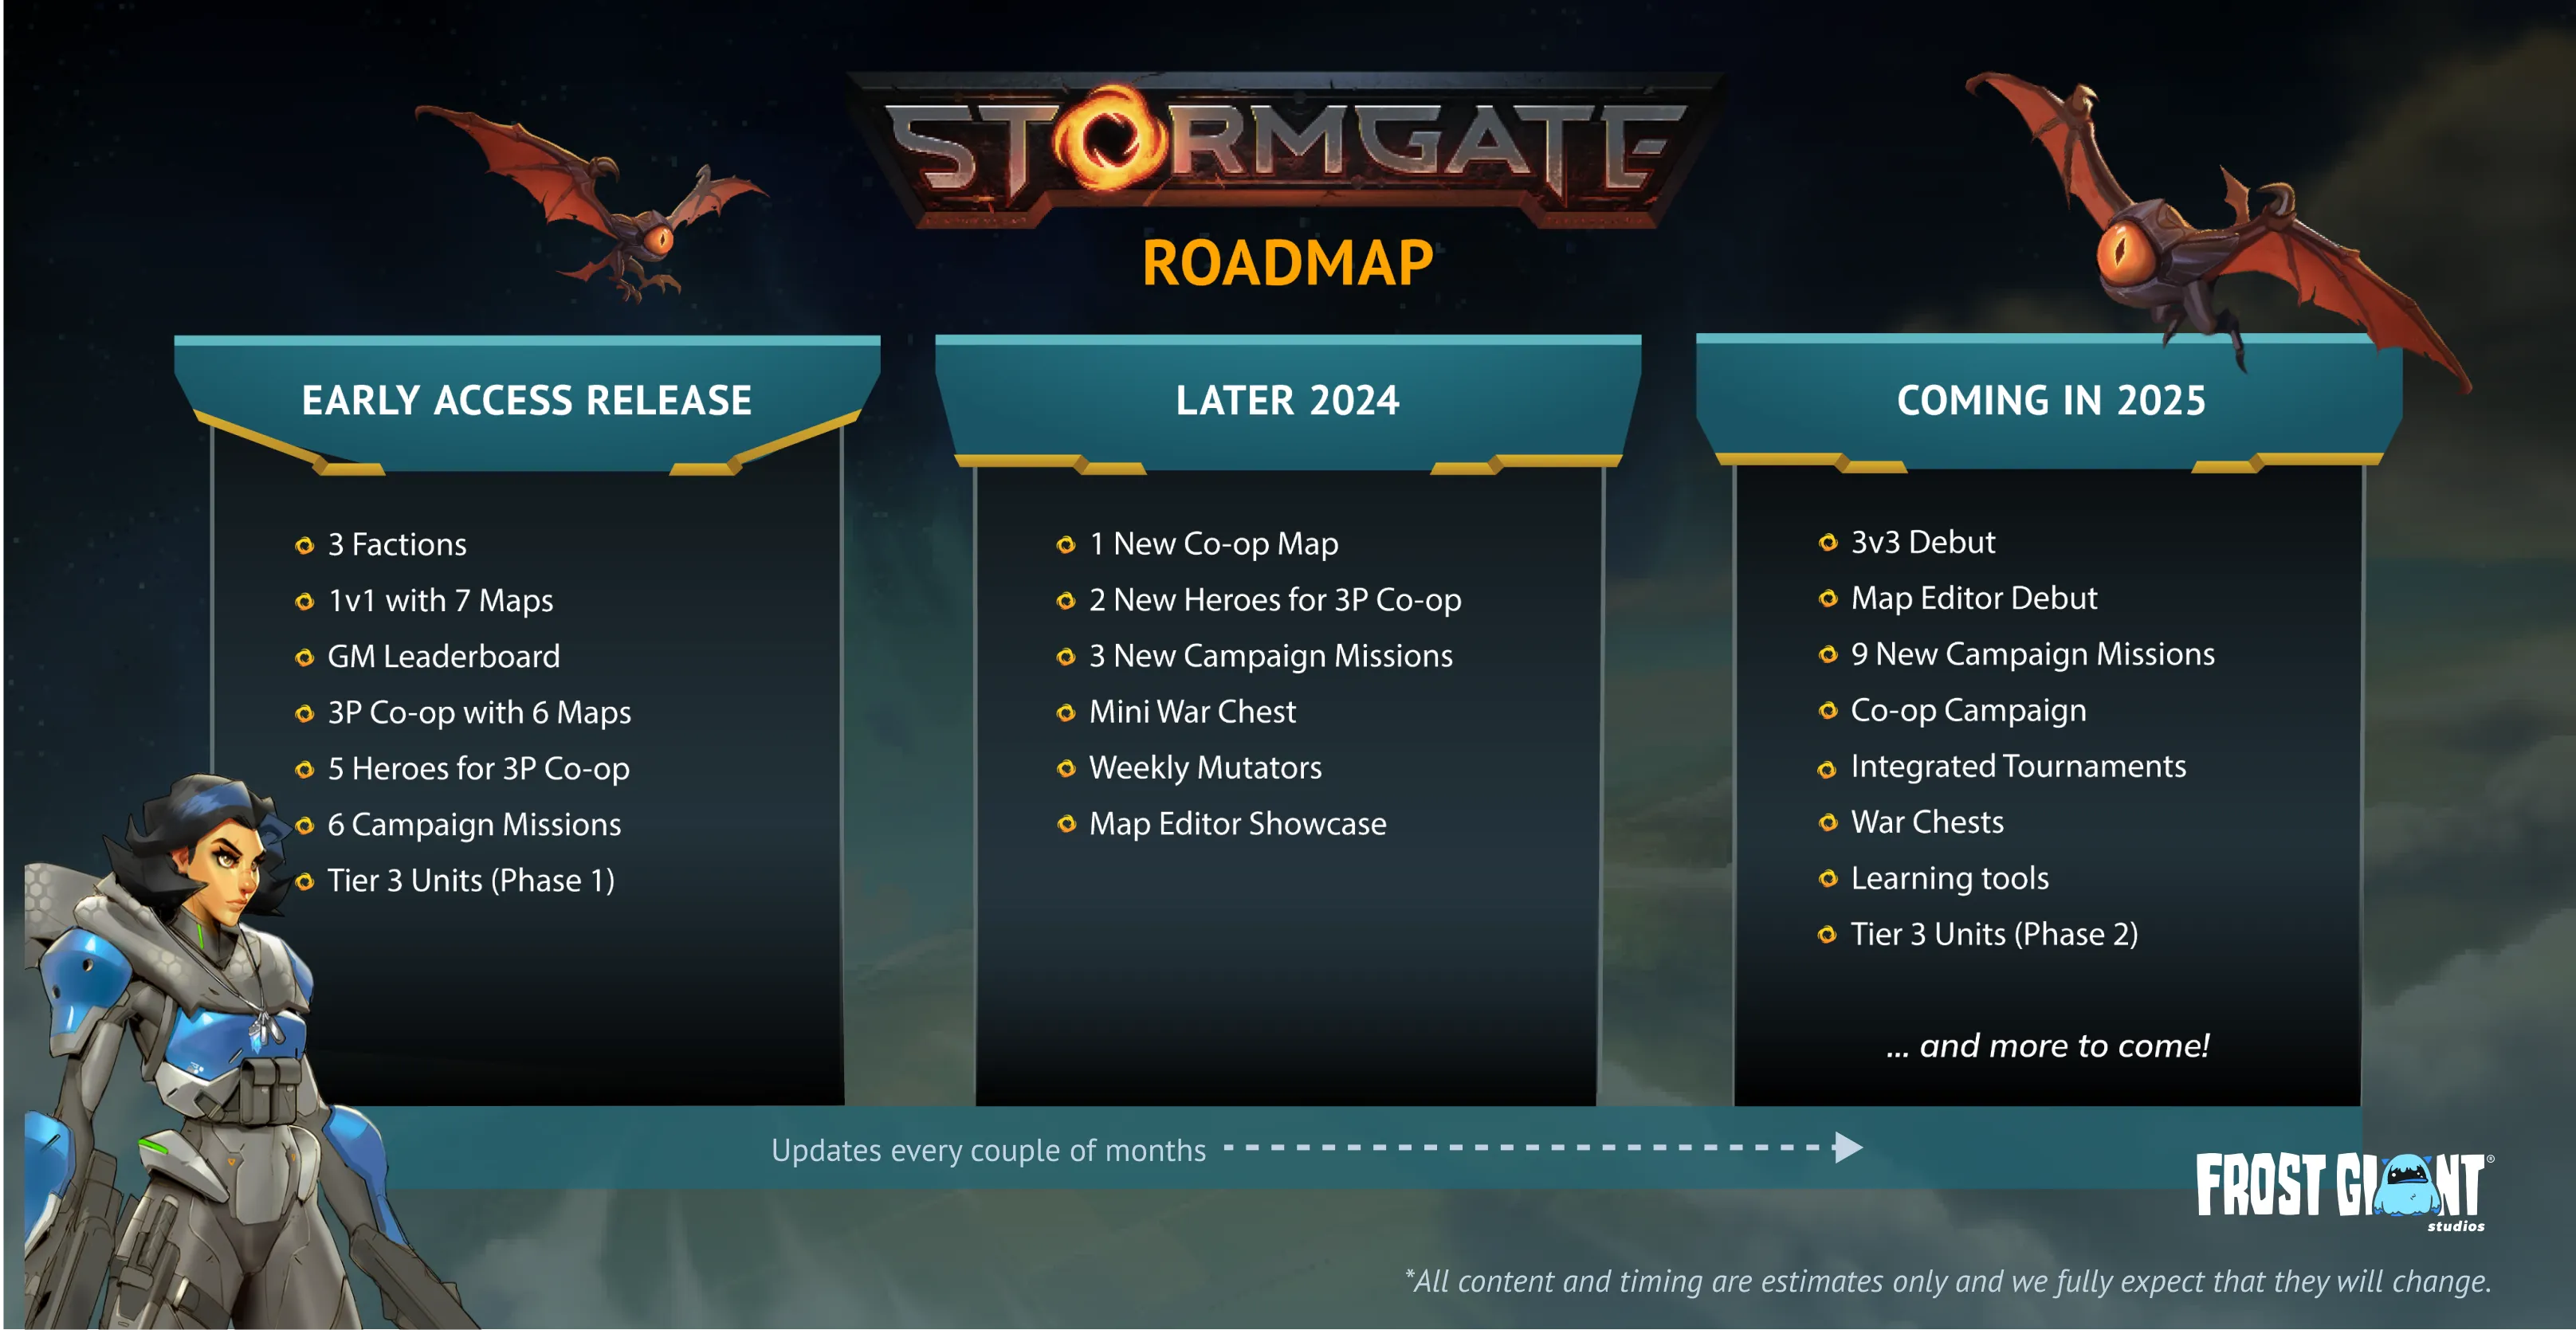 The Stormgate Roadmap